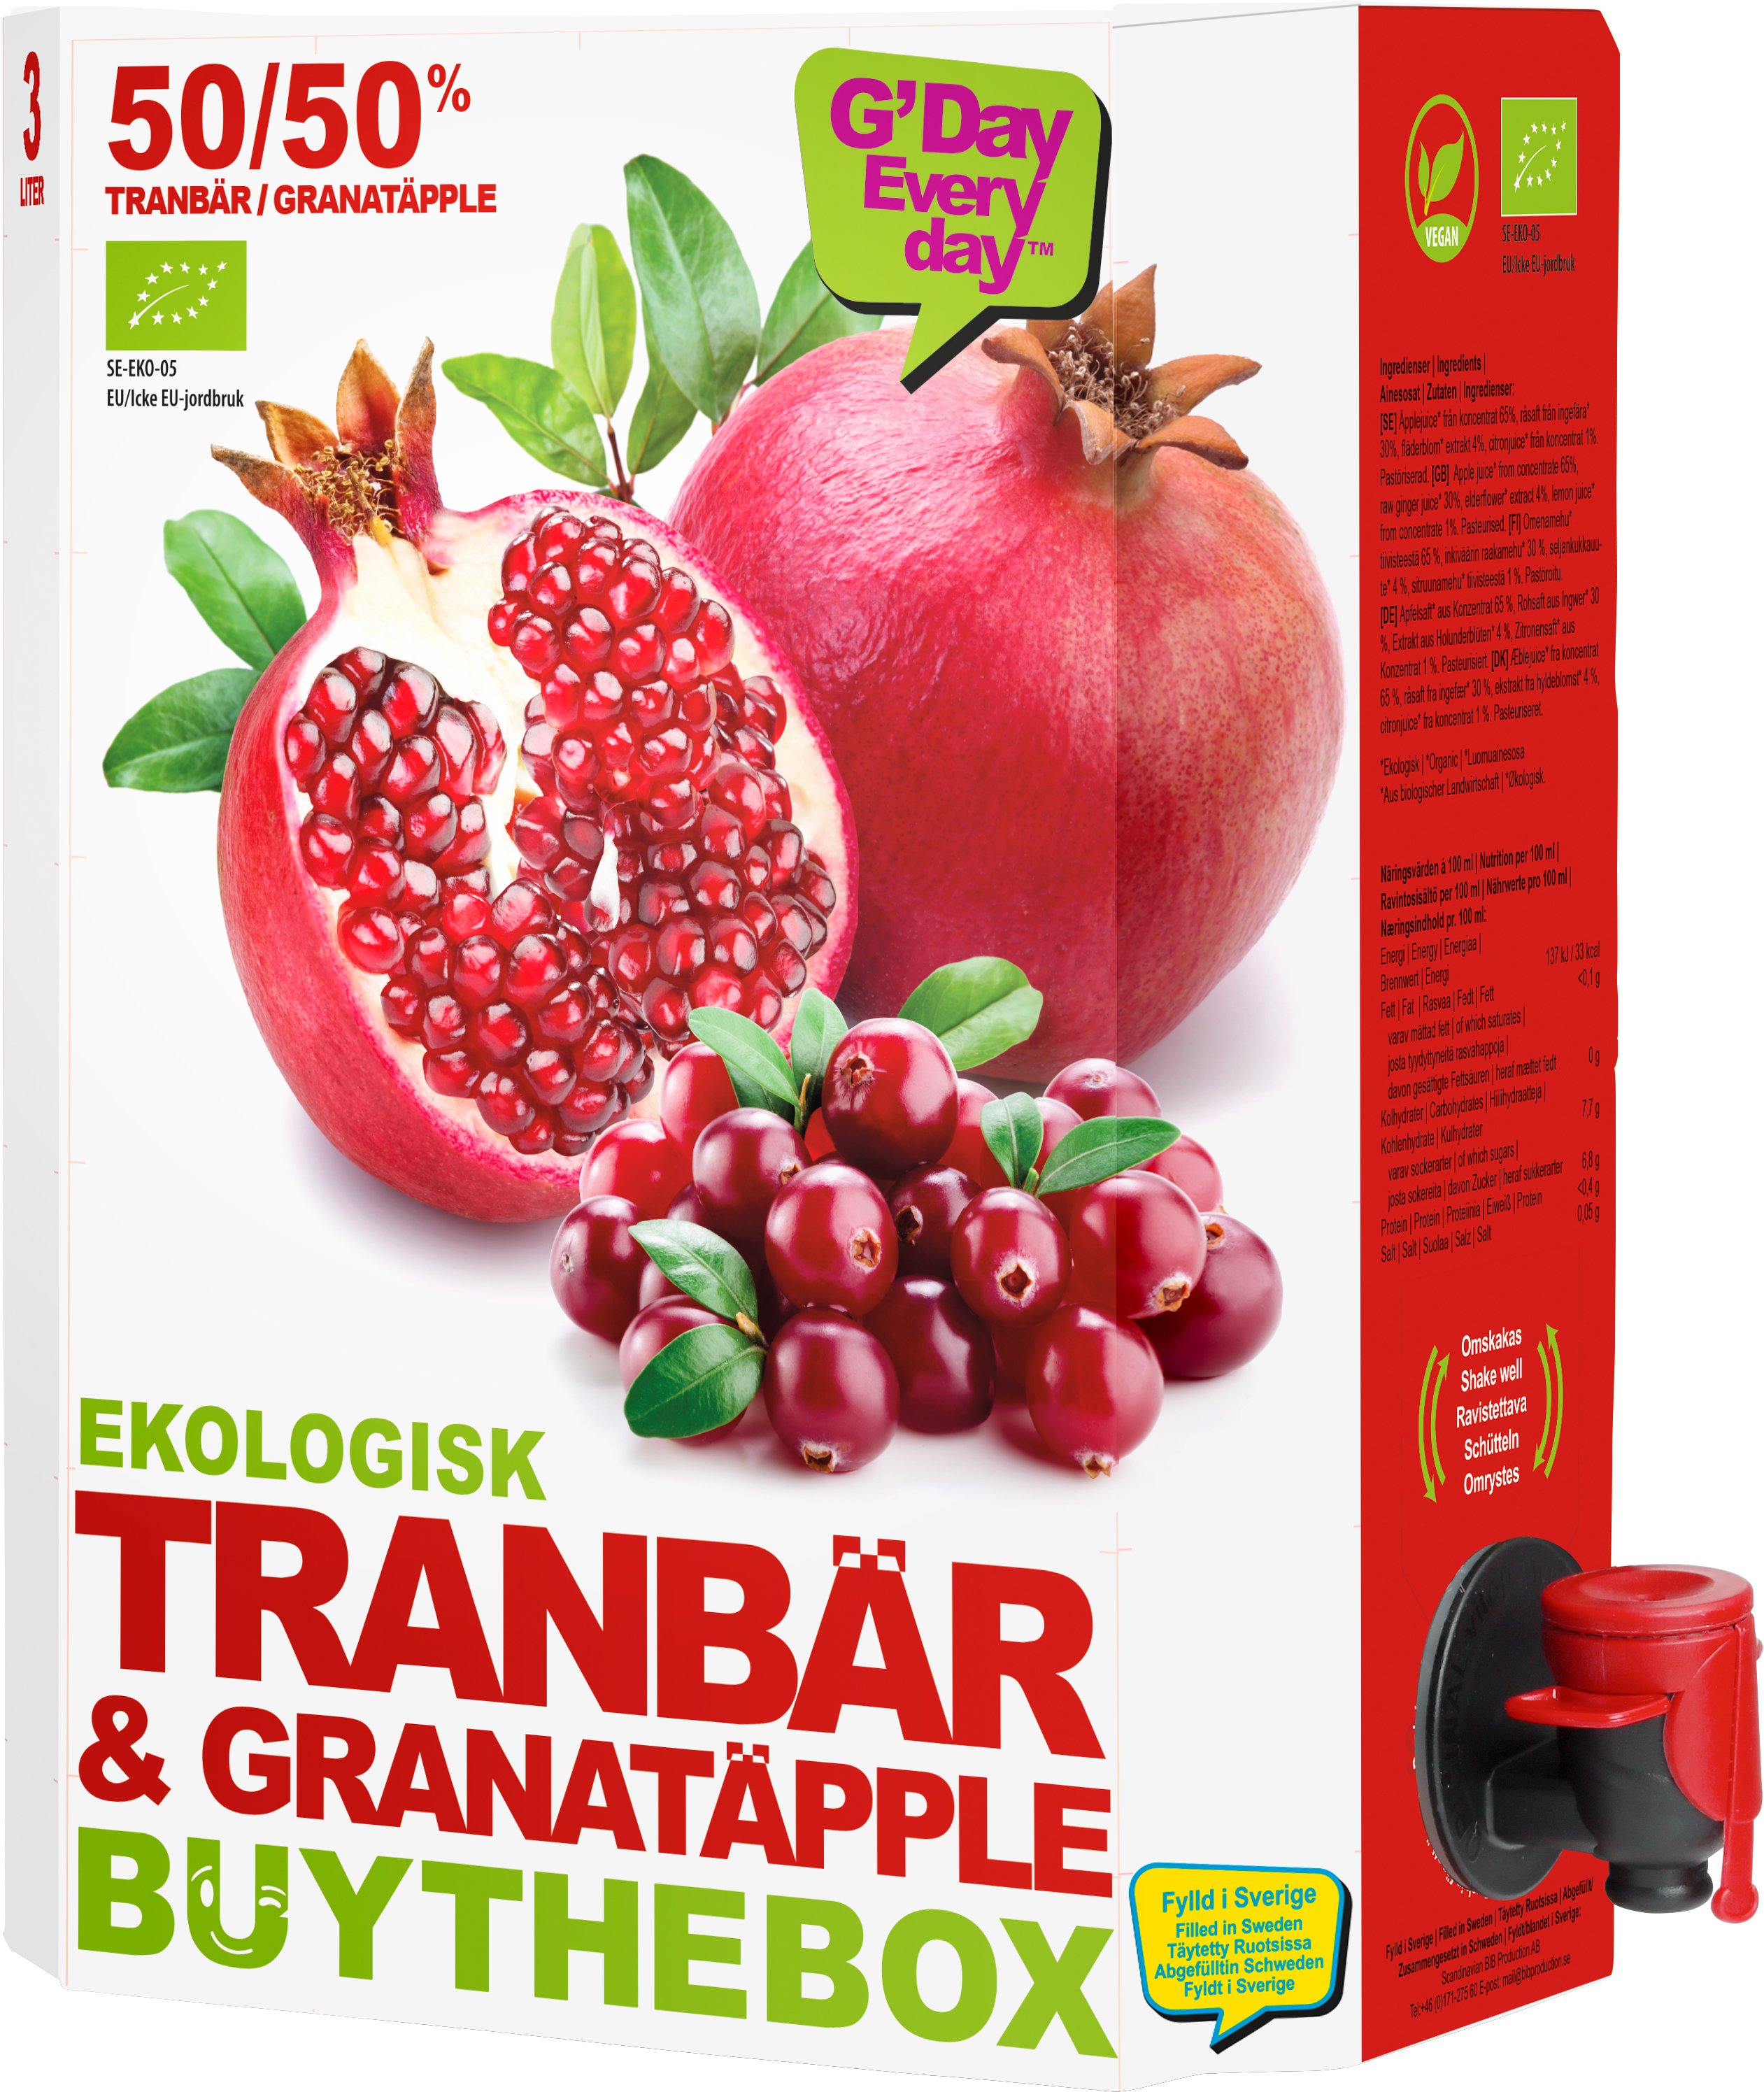 Juice Granatäpple & Tranbär Eko - 21% rabatt